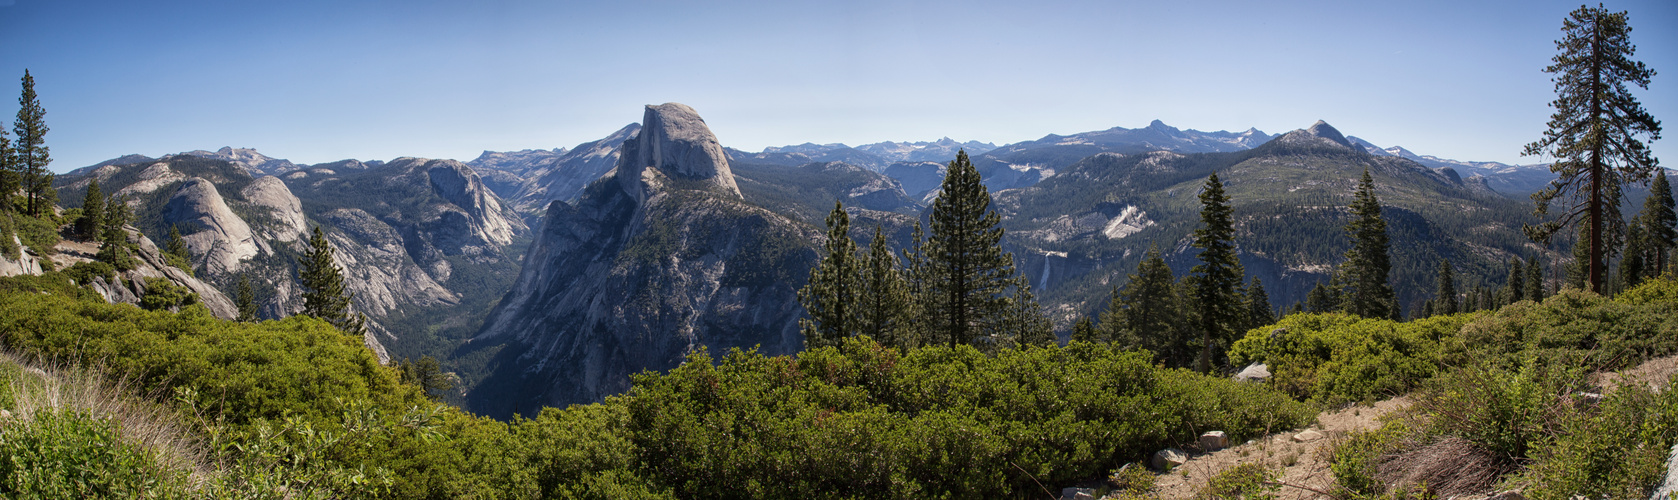 Half Dome - Yosemite-Nationalpark